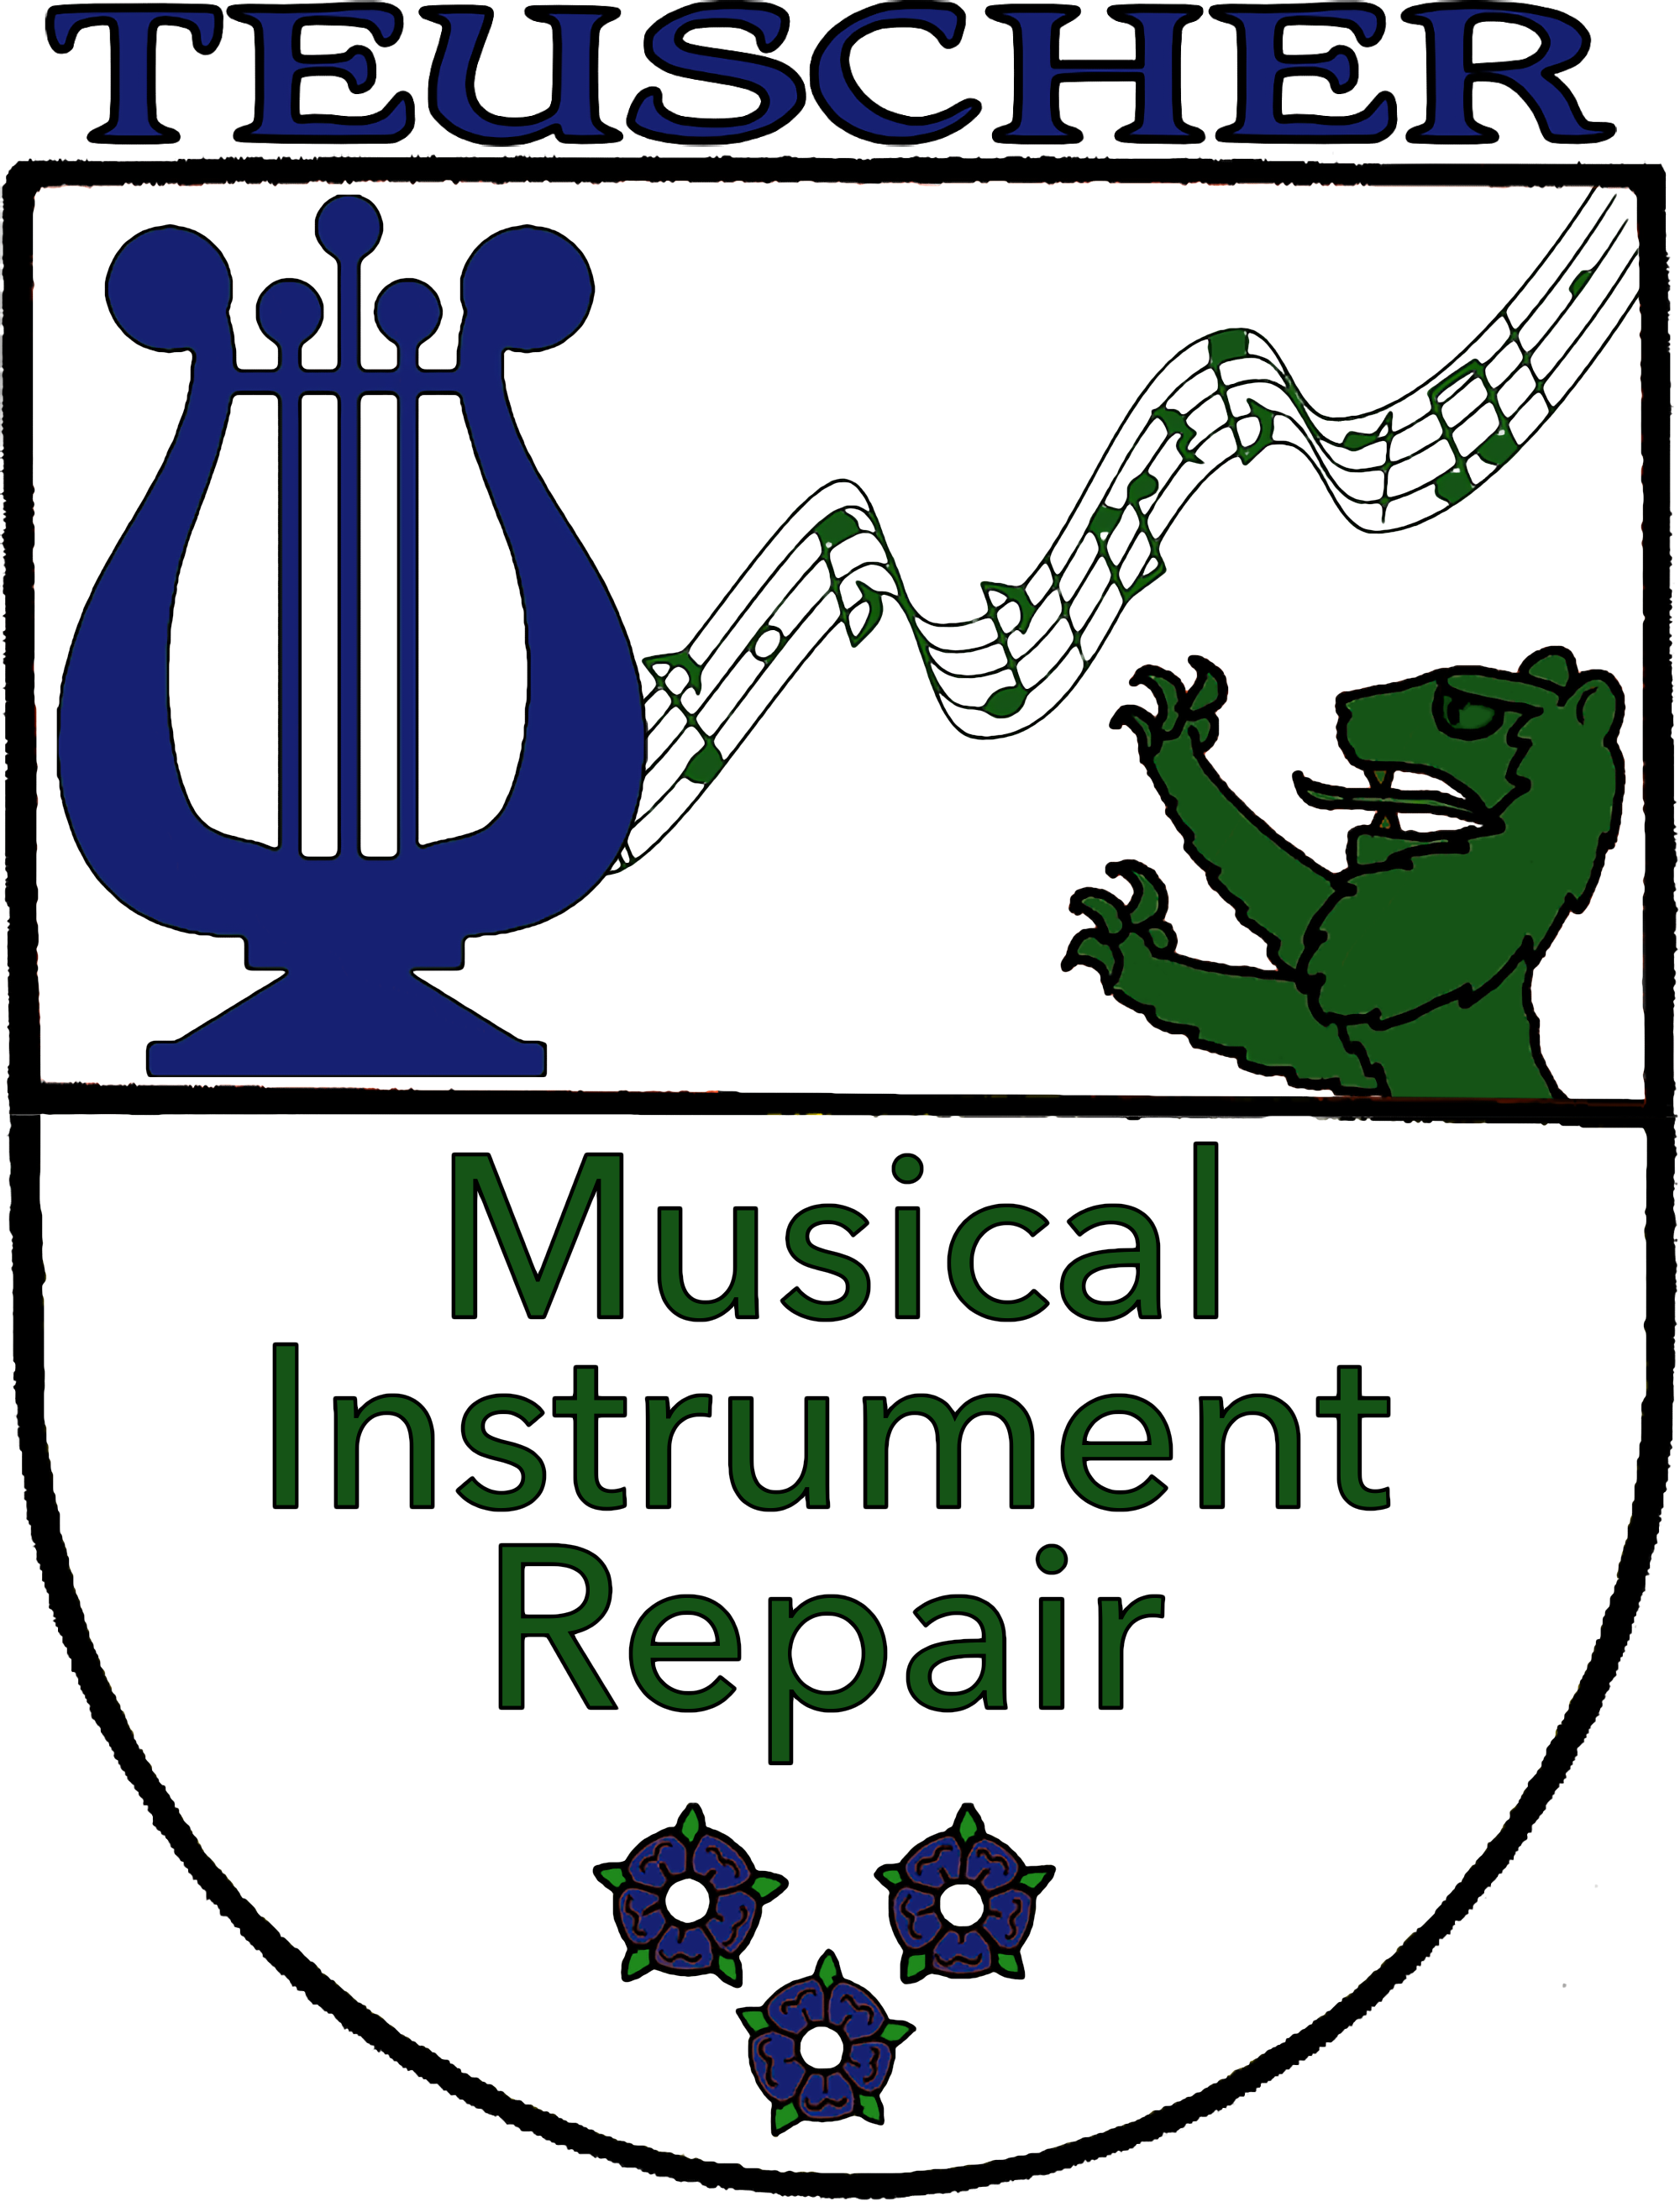 Logo for Teuscher Musical Instrument Repair